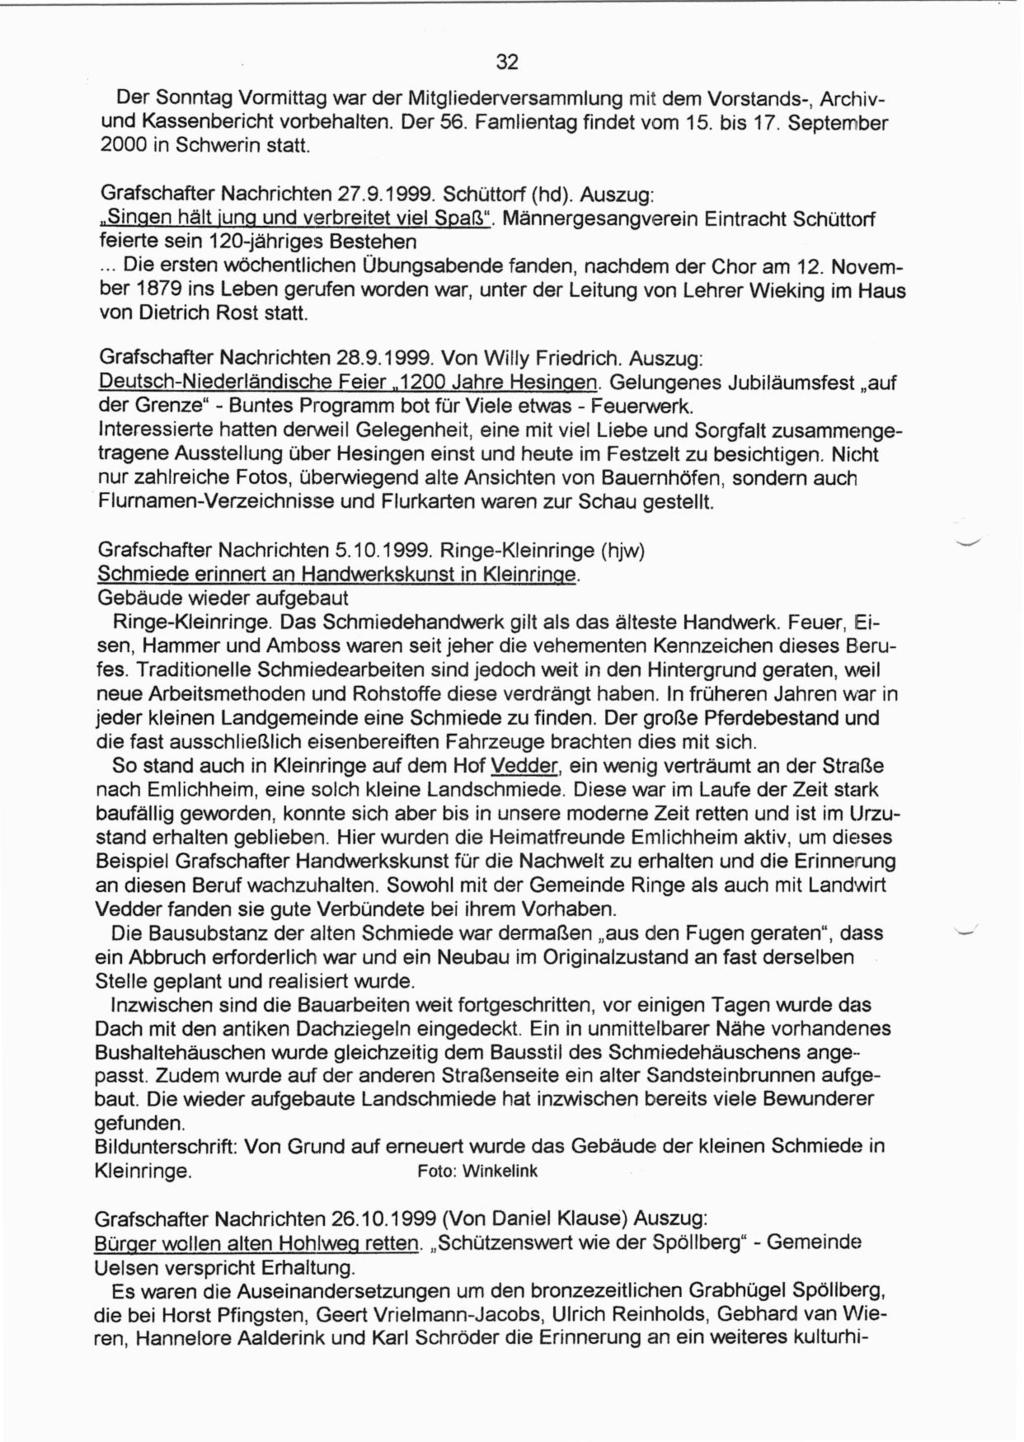 Der Sonntag Vormittag war der Mitgliederversammlung mit dem Vorstands-, Archivund Kassenbericht vorbehalten. Der 56. Famlientag findet vom 15. bis 17. September 2000 in Schwerin statt.